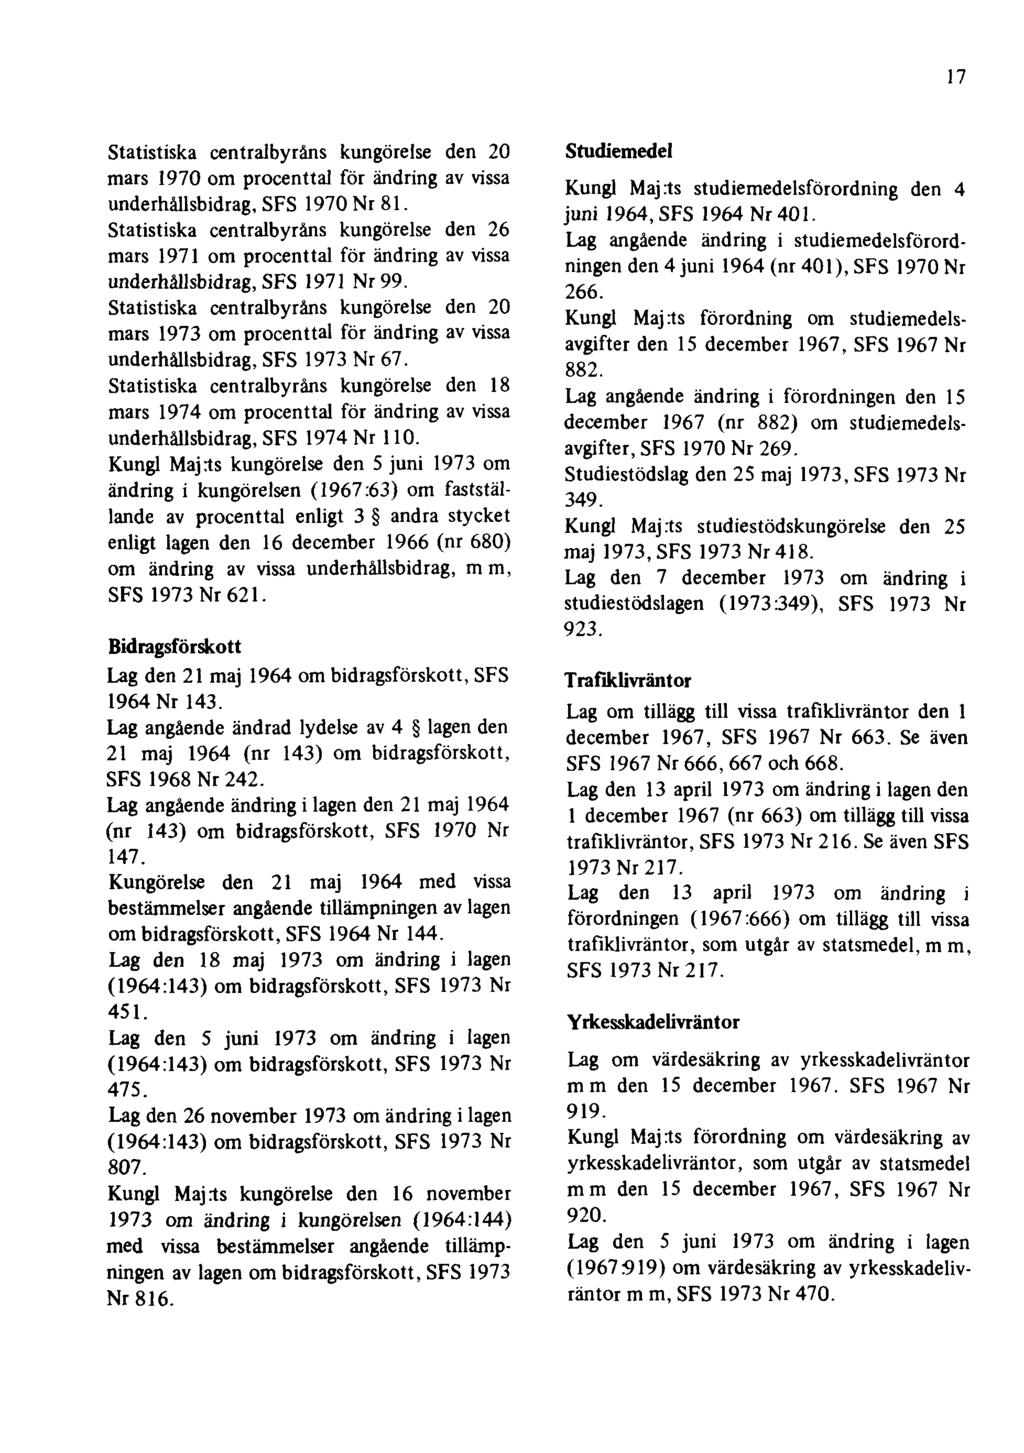 17 Statistiska centralbyråns kungörelse den 20 mars 1970 om procenttal för ändring av vissa underhållsbidrag, SFS 1970 Nr 81.